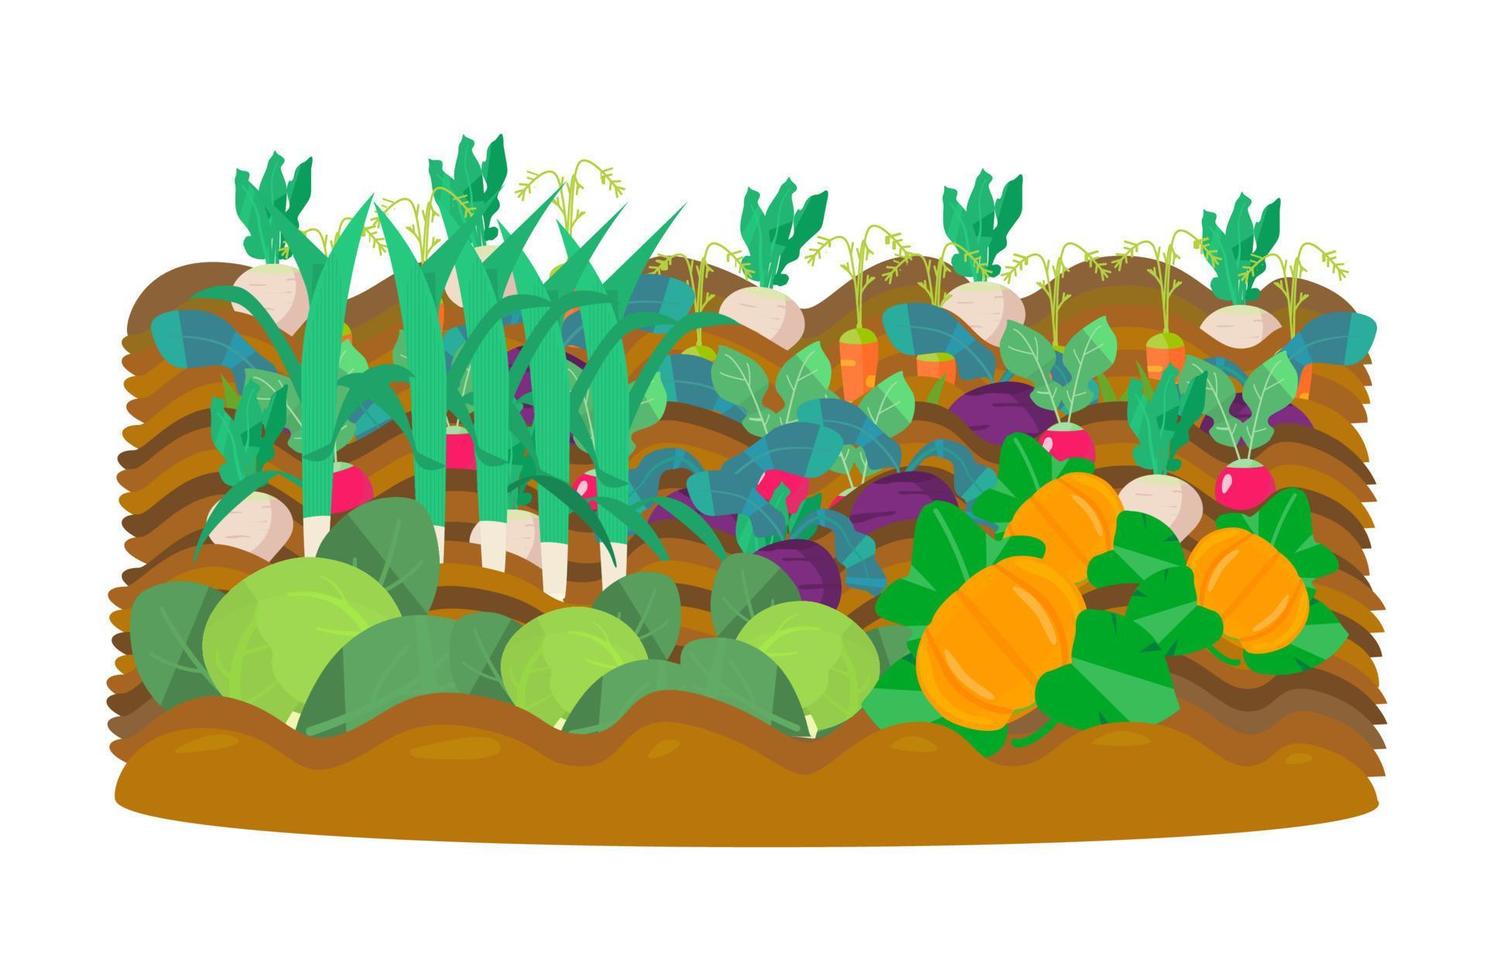 ilustración vectot de la huerta. rábano, remolacha, rábano de jardín, zanahorias, repollo, calabazas, puerro. cosecha. vector